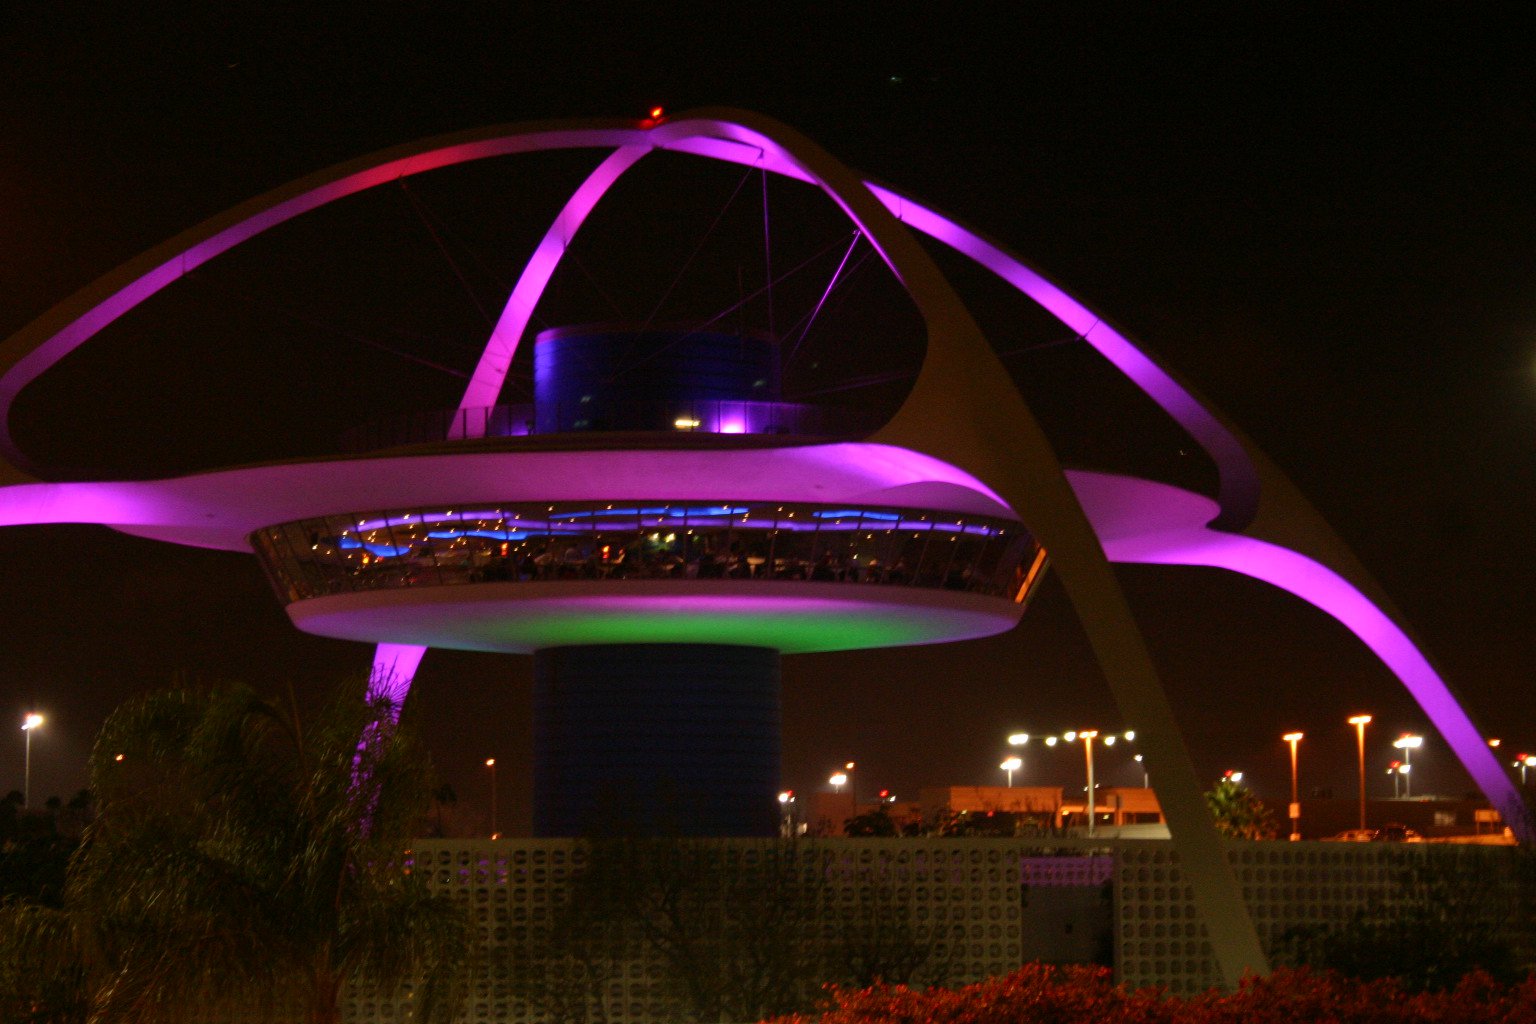 The Theme Building iluminado à noite. Williams fez parte da comitiva que criou o projeto 